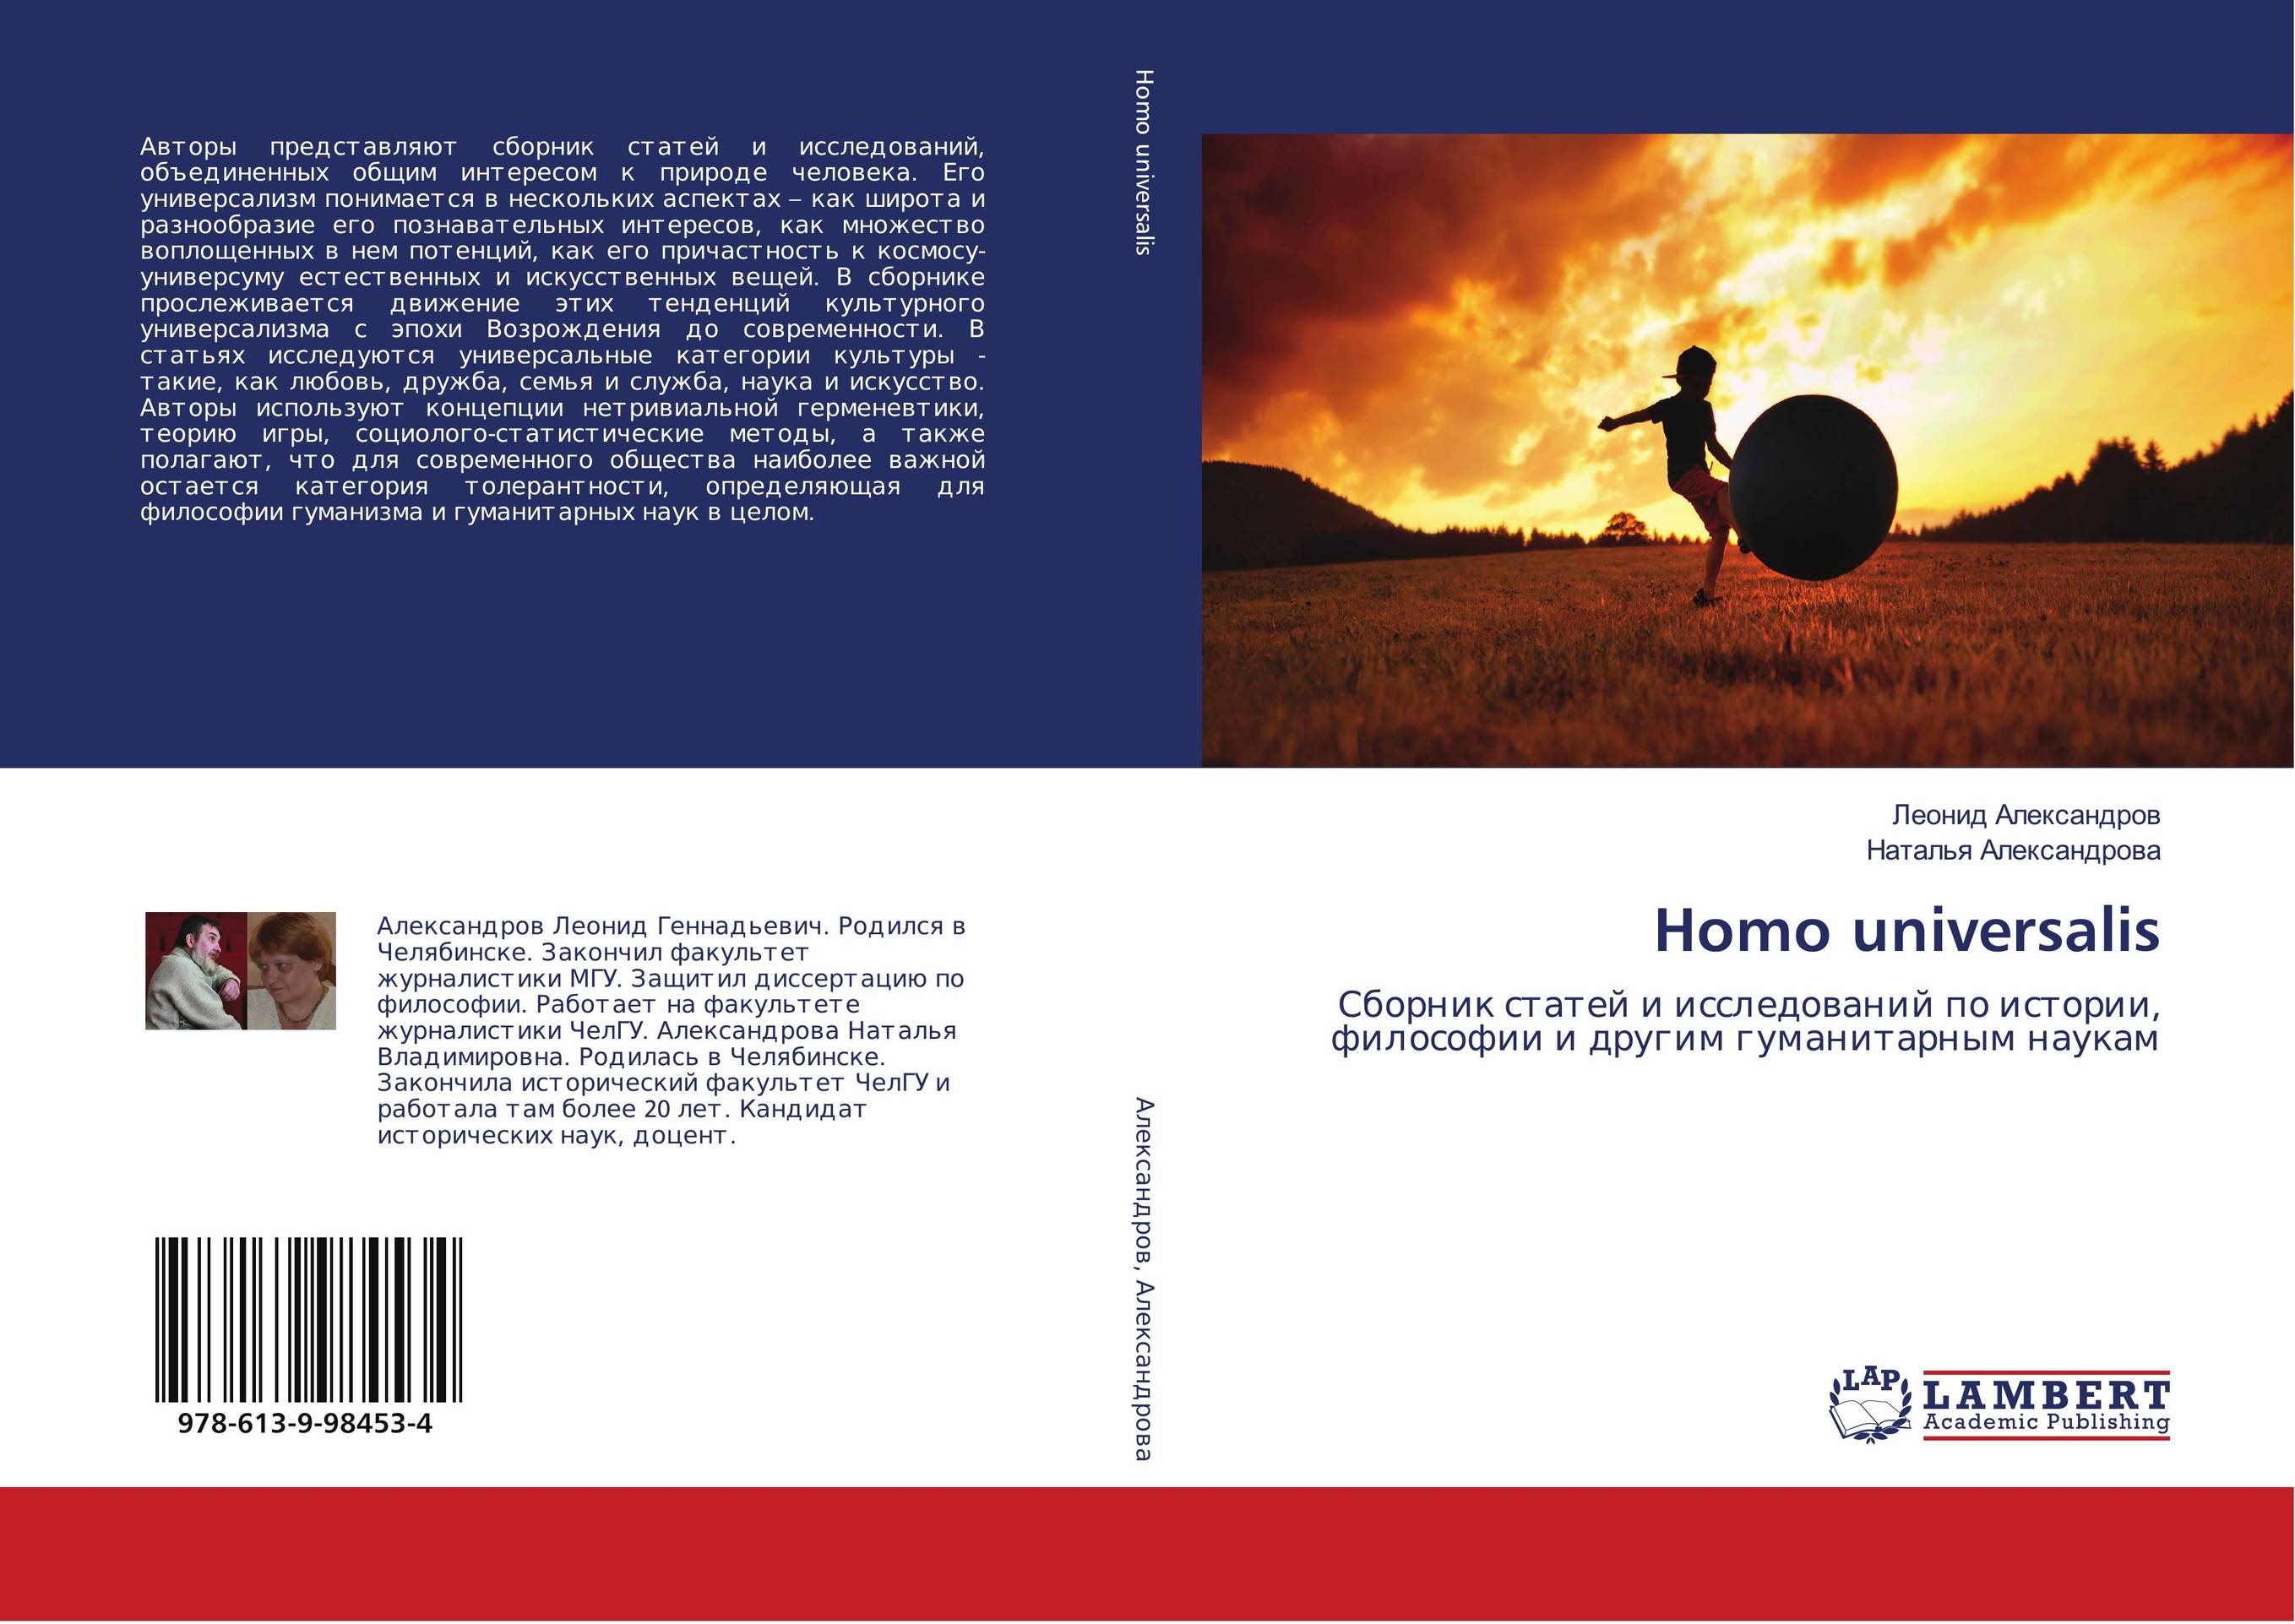 Homo universalis. Сборник статей и исследований по истории, философии и другим гуманитарным наукам.